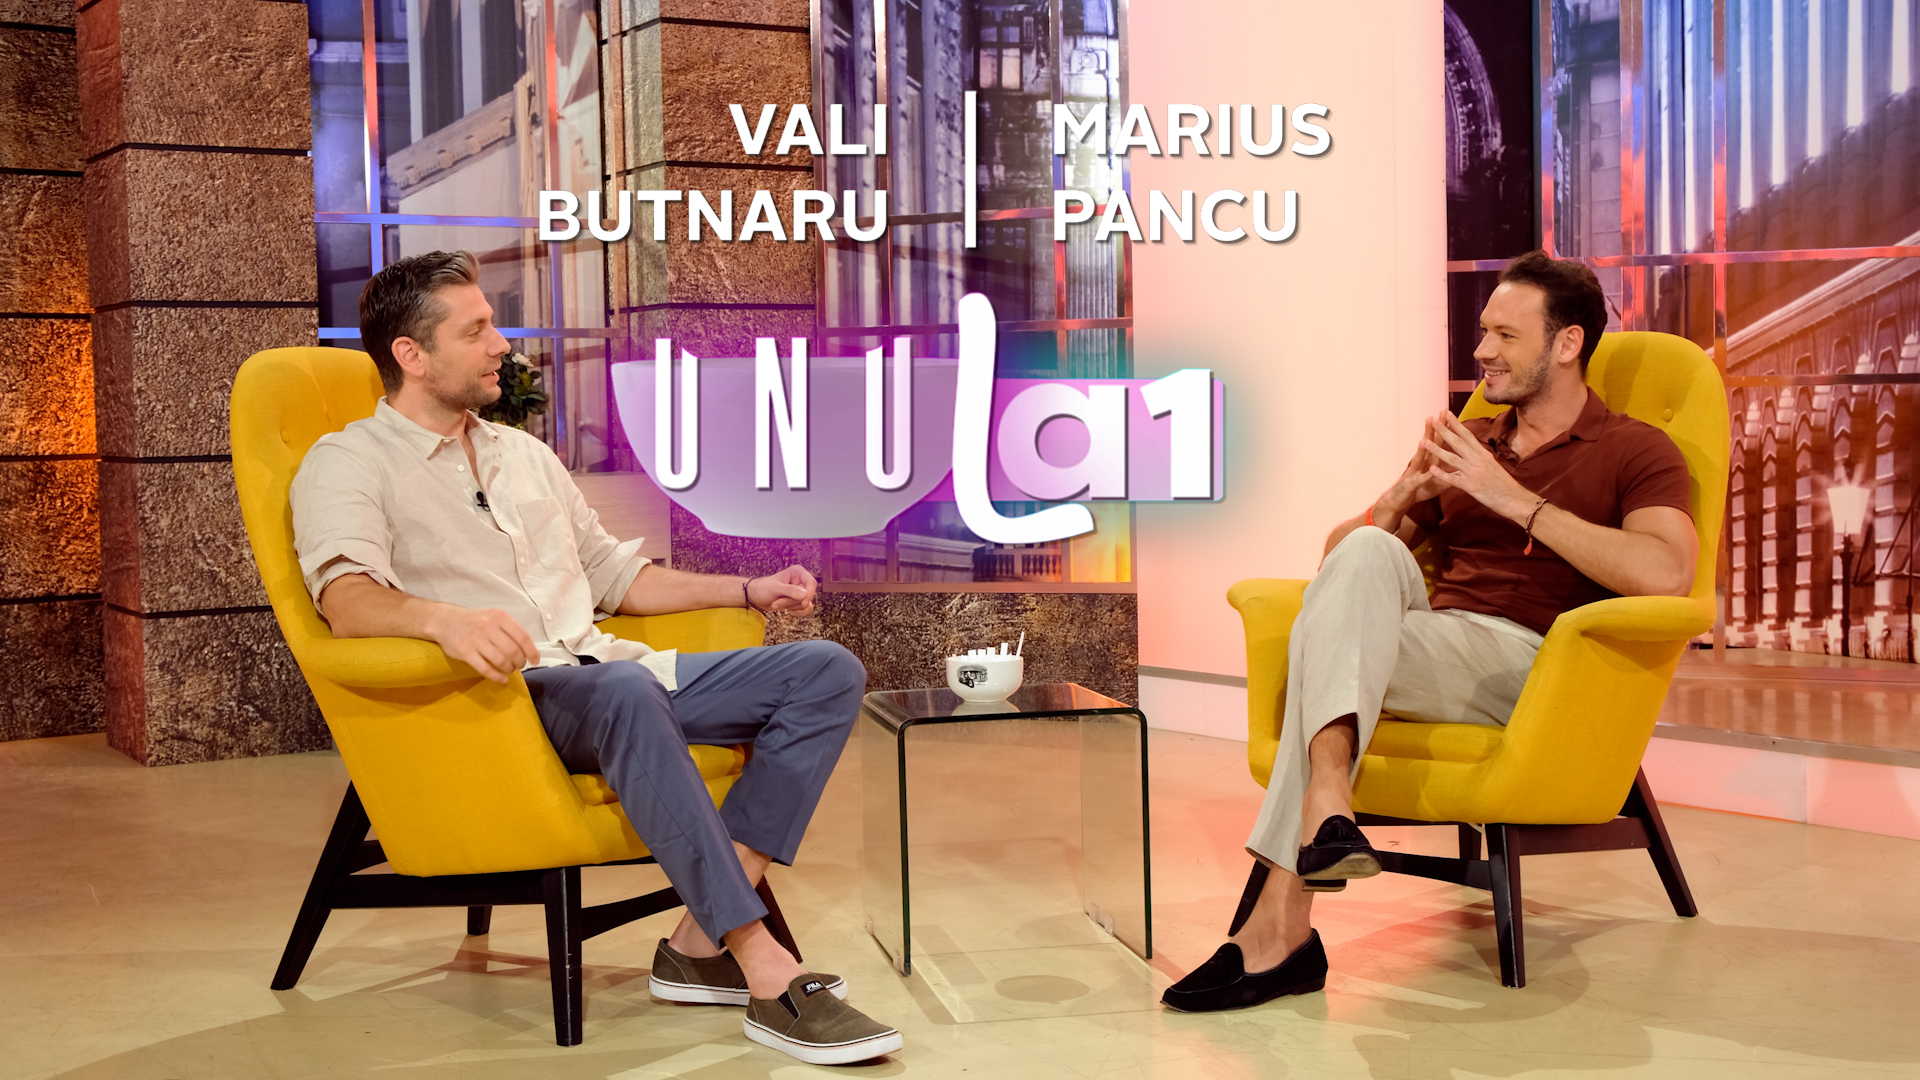 UNU la 1 - Valentin Butnaru și Marius Pancu